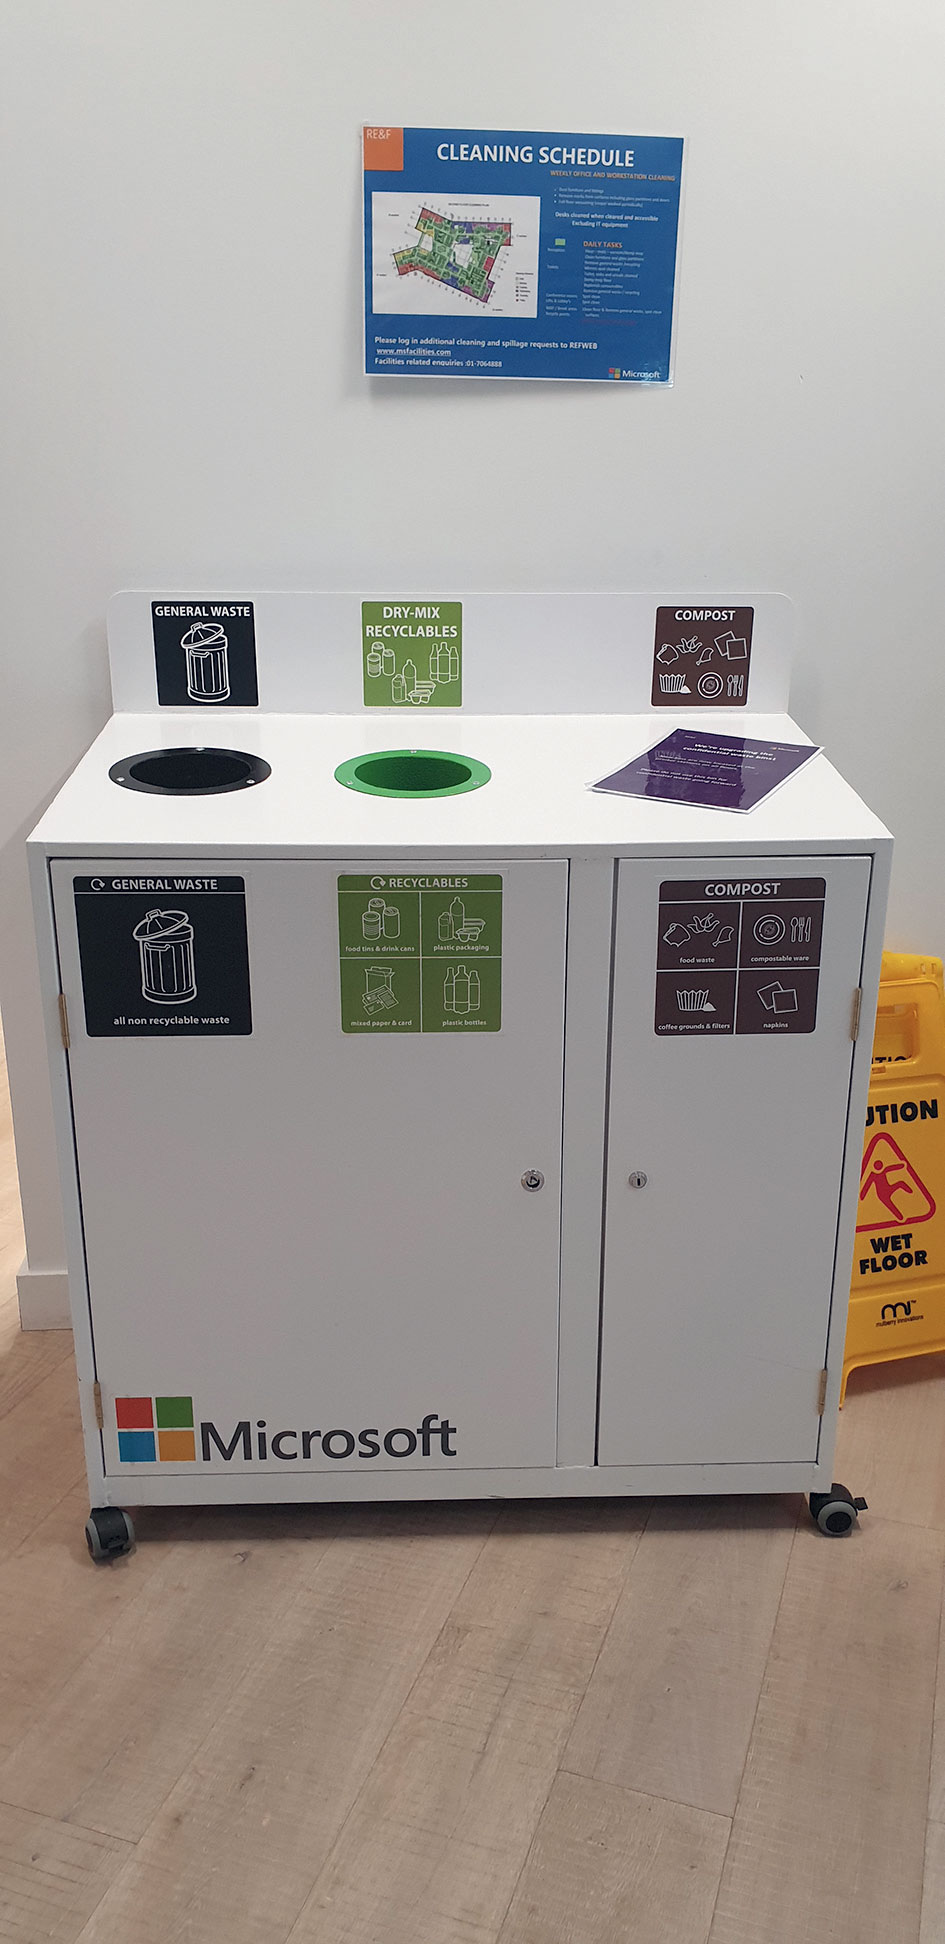 Nádoby na separáciu a zber kompostovateľného odpadu v budove Microsoftu s podrobnými vysvetlivkami ako odpad separovať